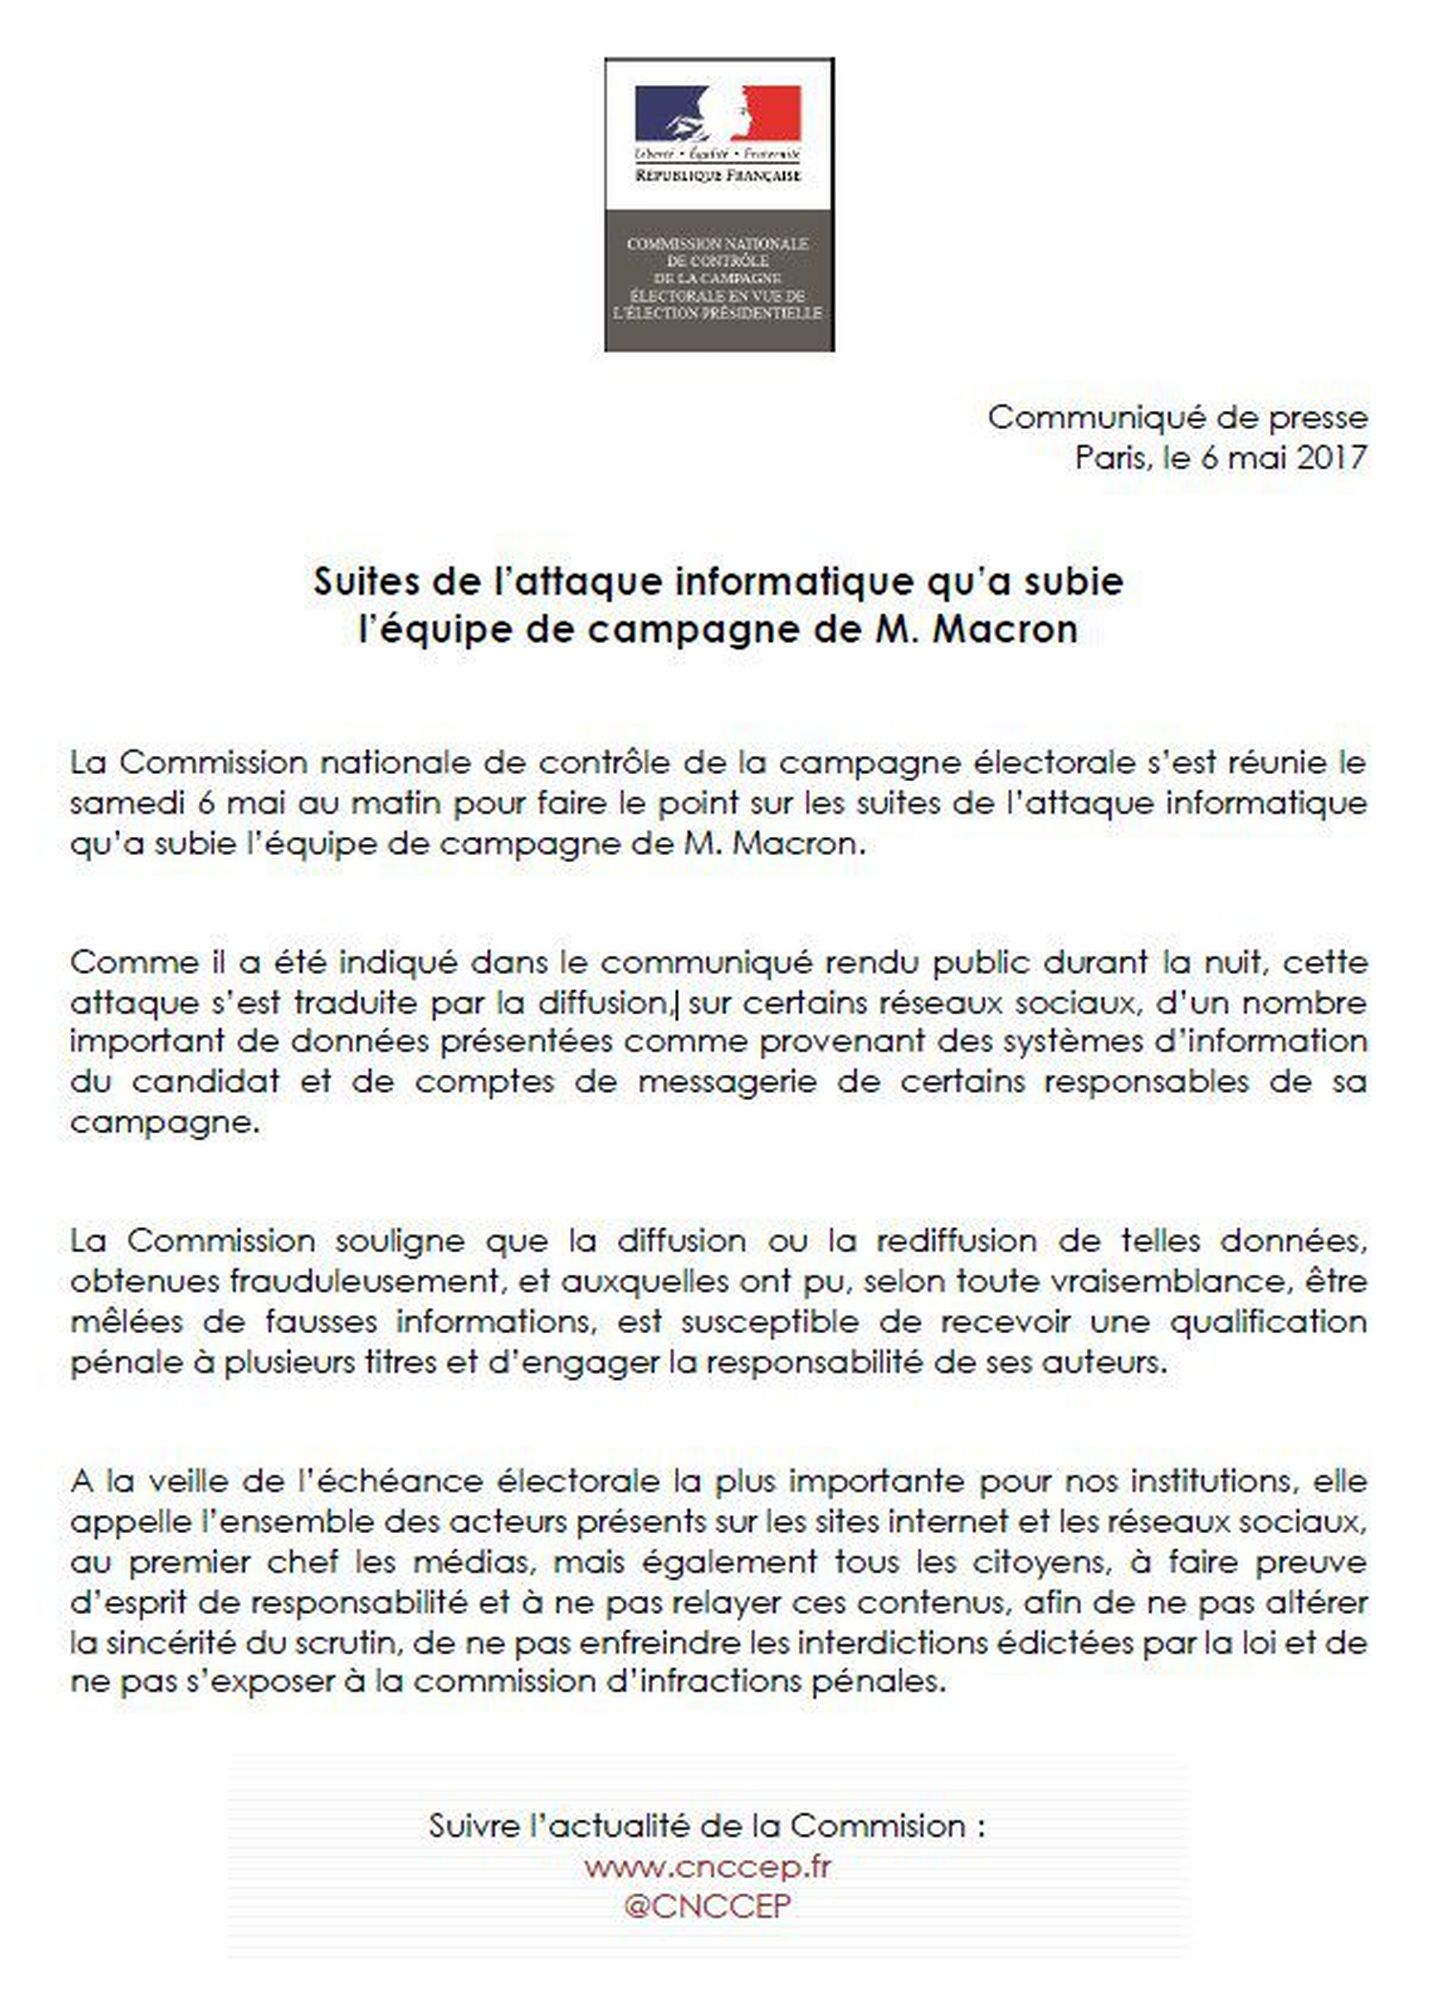 Prantsuse keskvalimiskomisjoni avaldatud keeluteade lekete avalikustamise kohta.